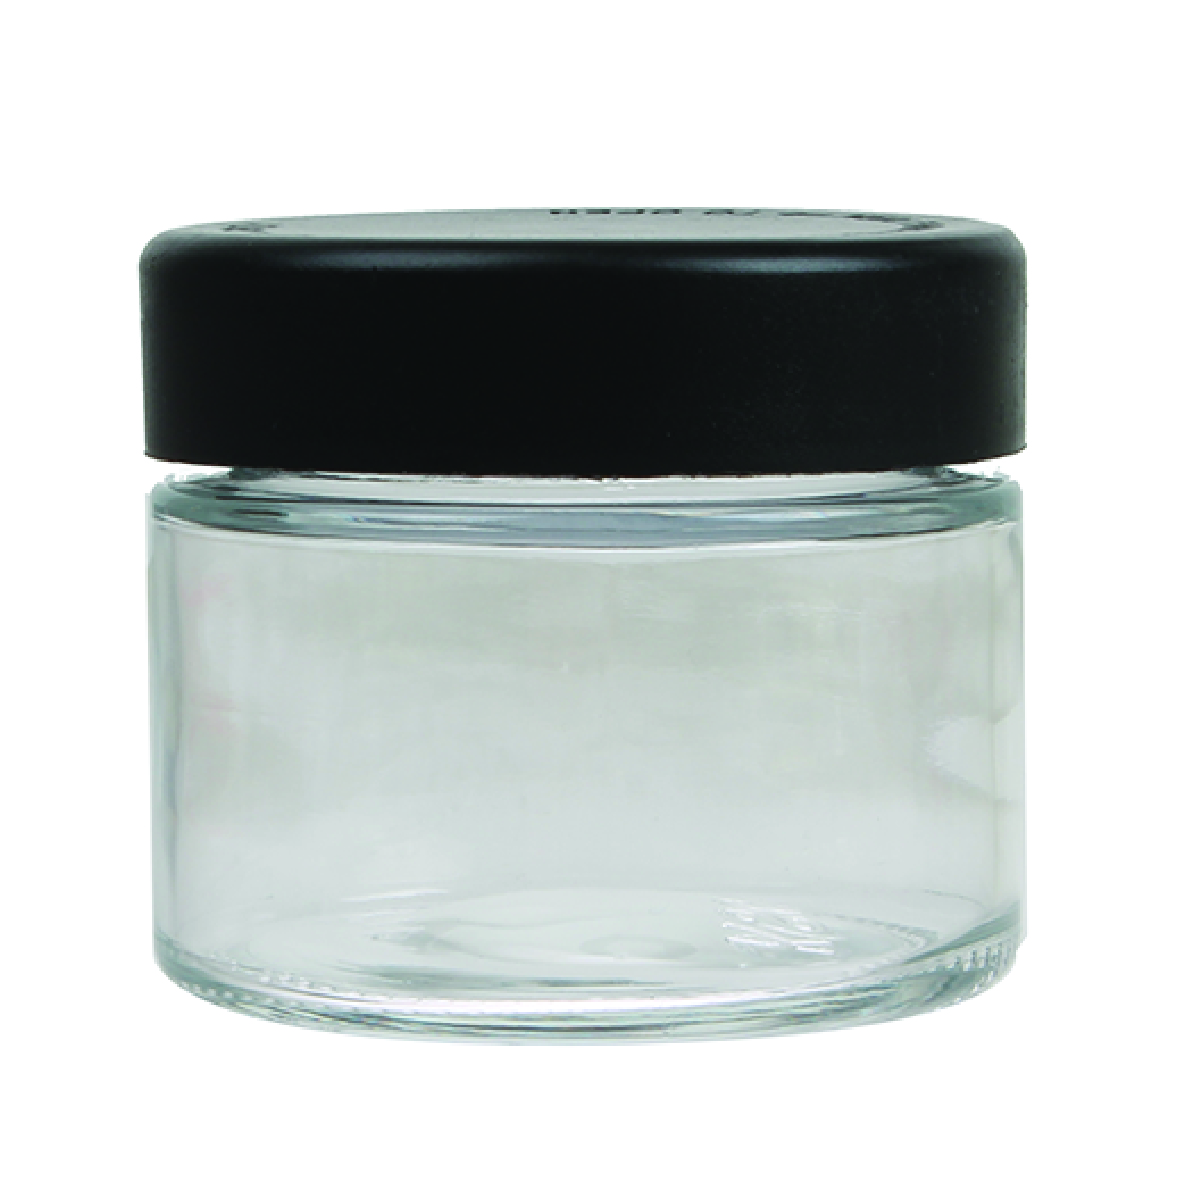 Black Lid Premium Glass Jar 2oz